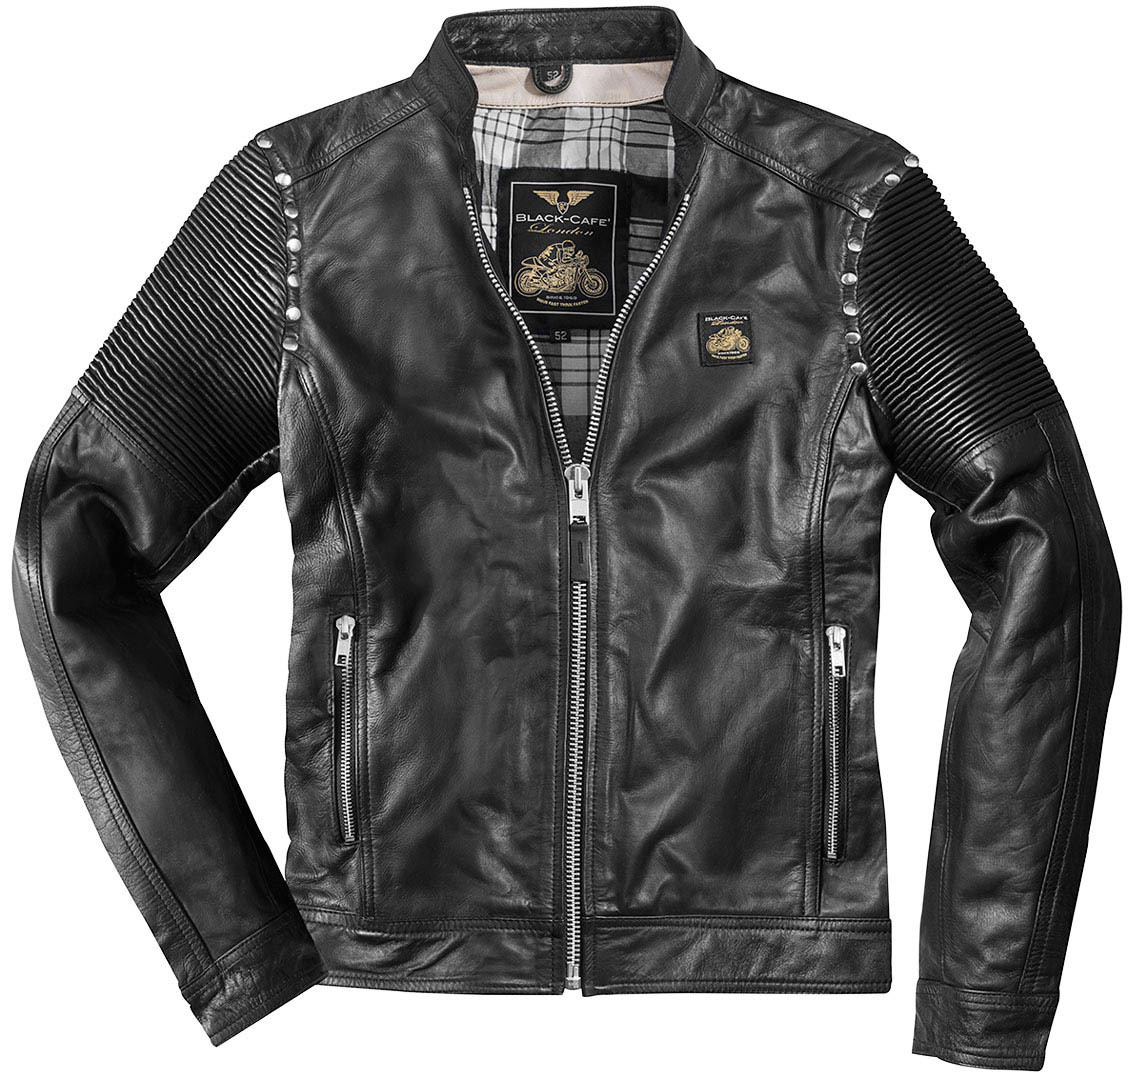 кожаная куртка mustang nahkatakki черный Мотоциклетная кожаная куртка Black-Cafe London Milano 2.0 с вышивкой на груди, черный